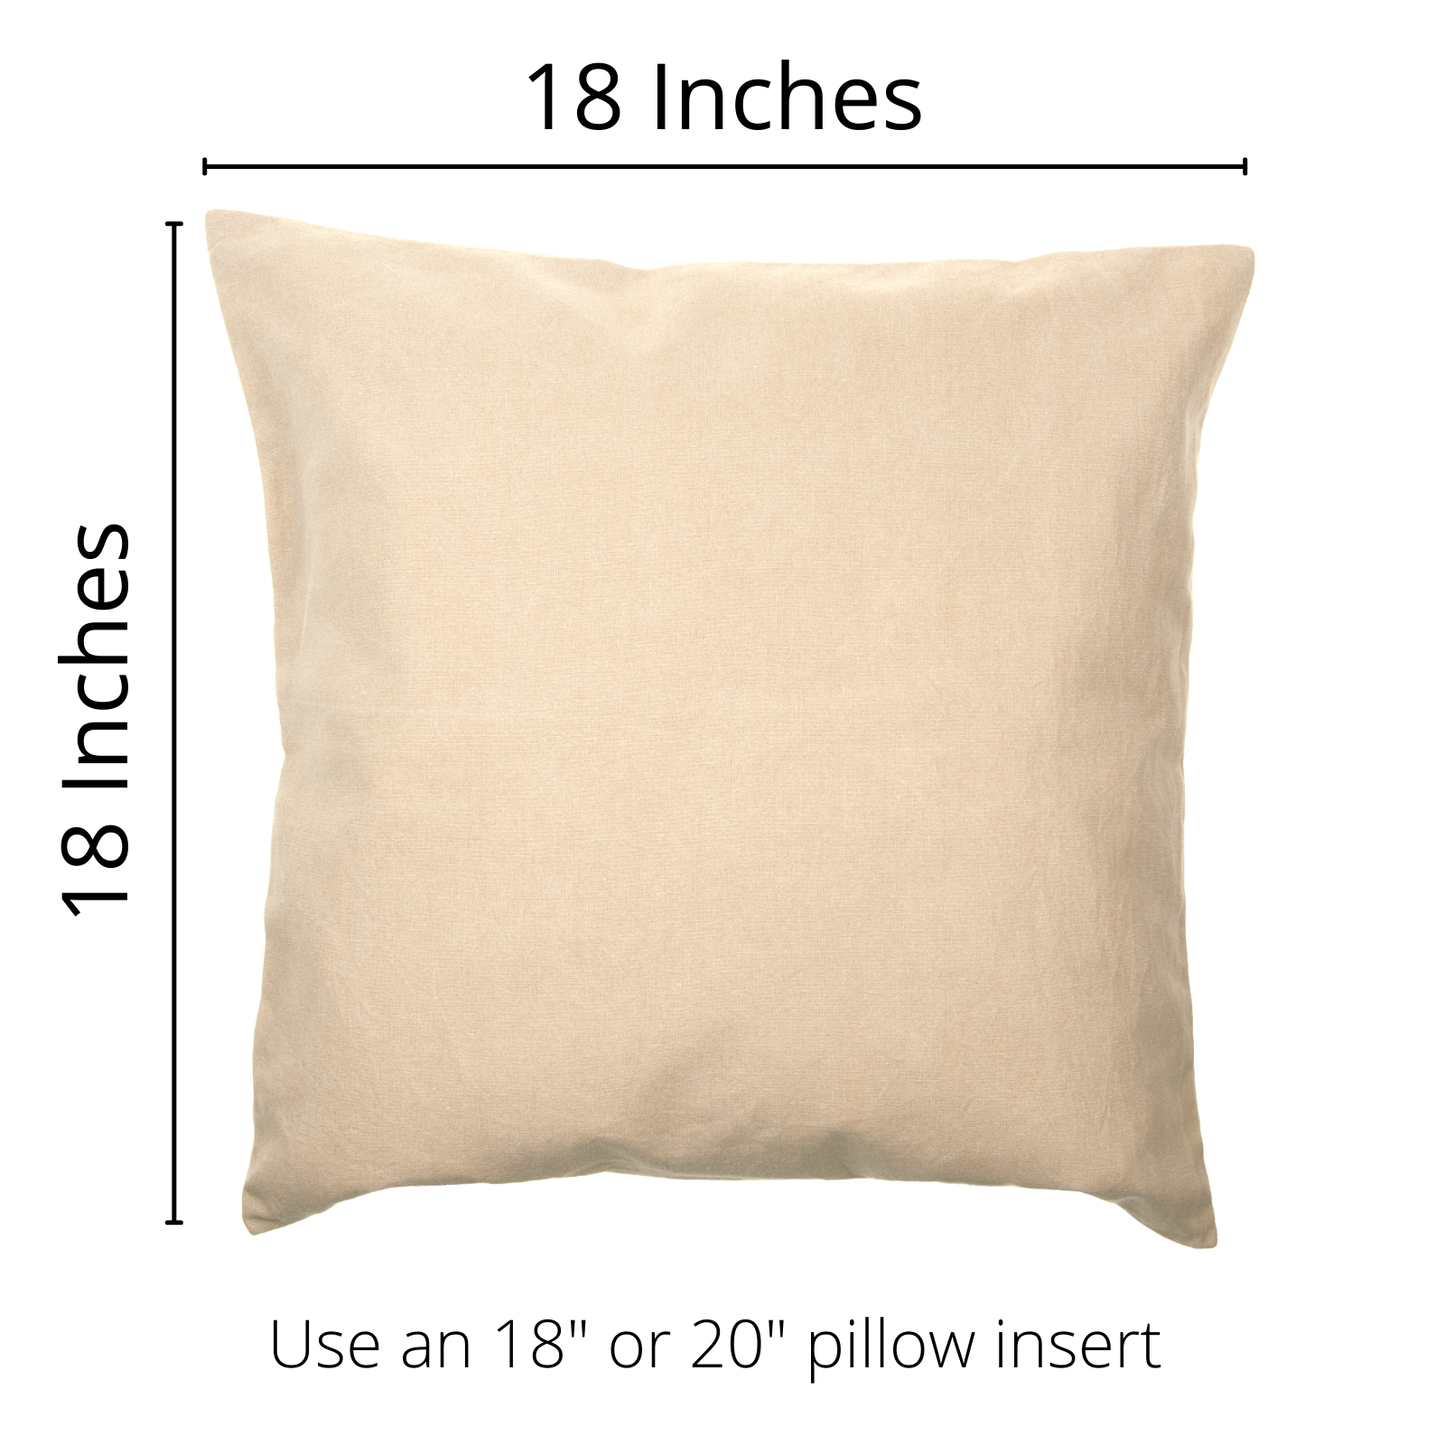 Lamb Pillow Cover